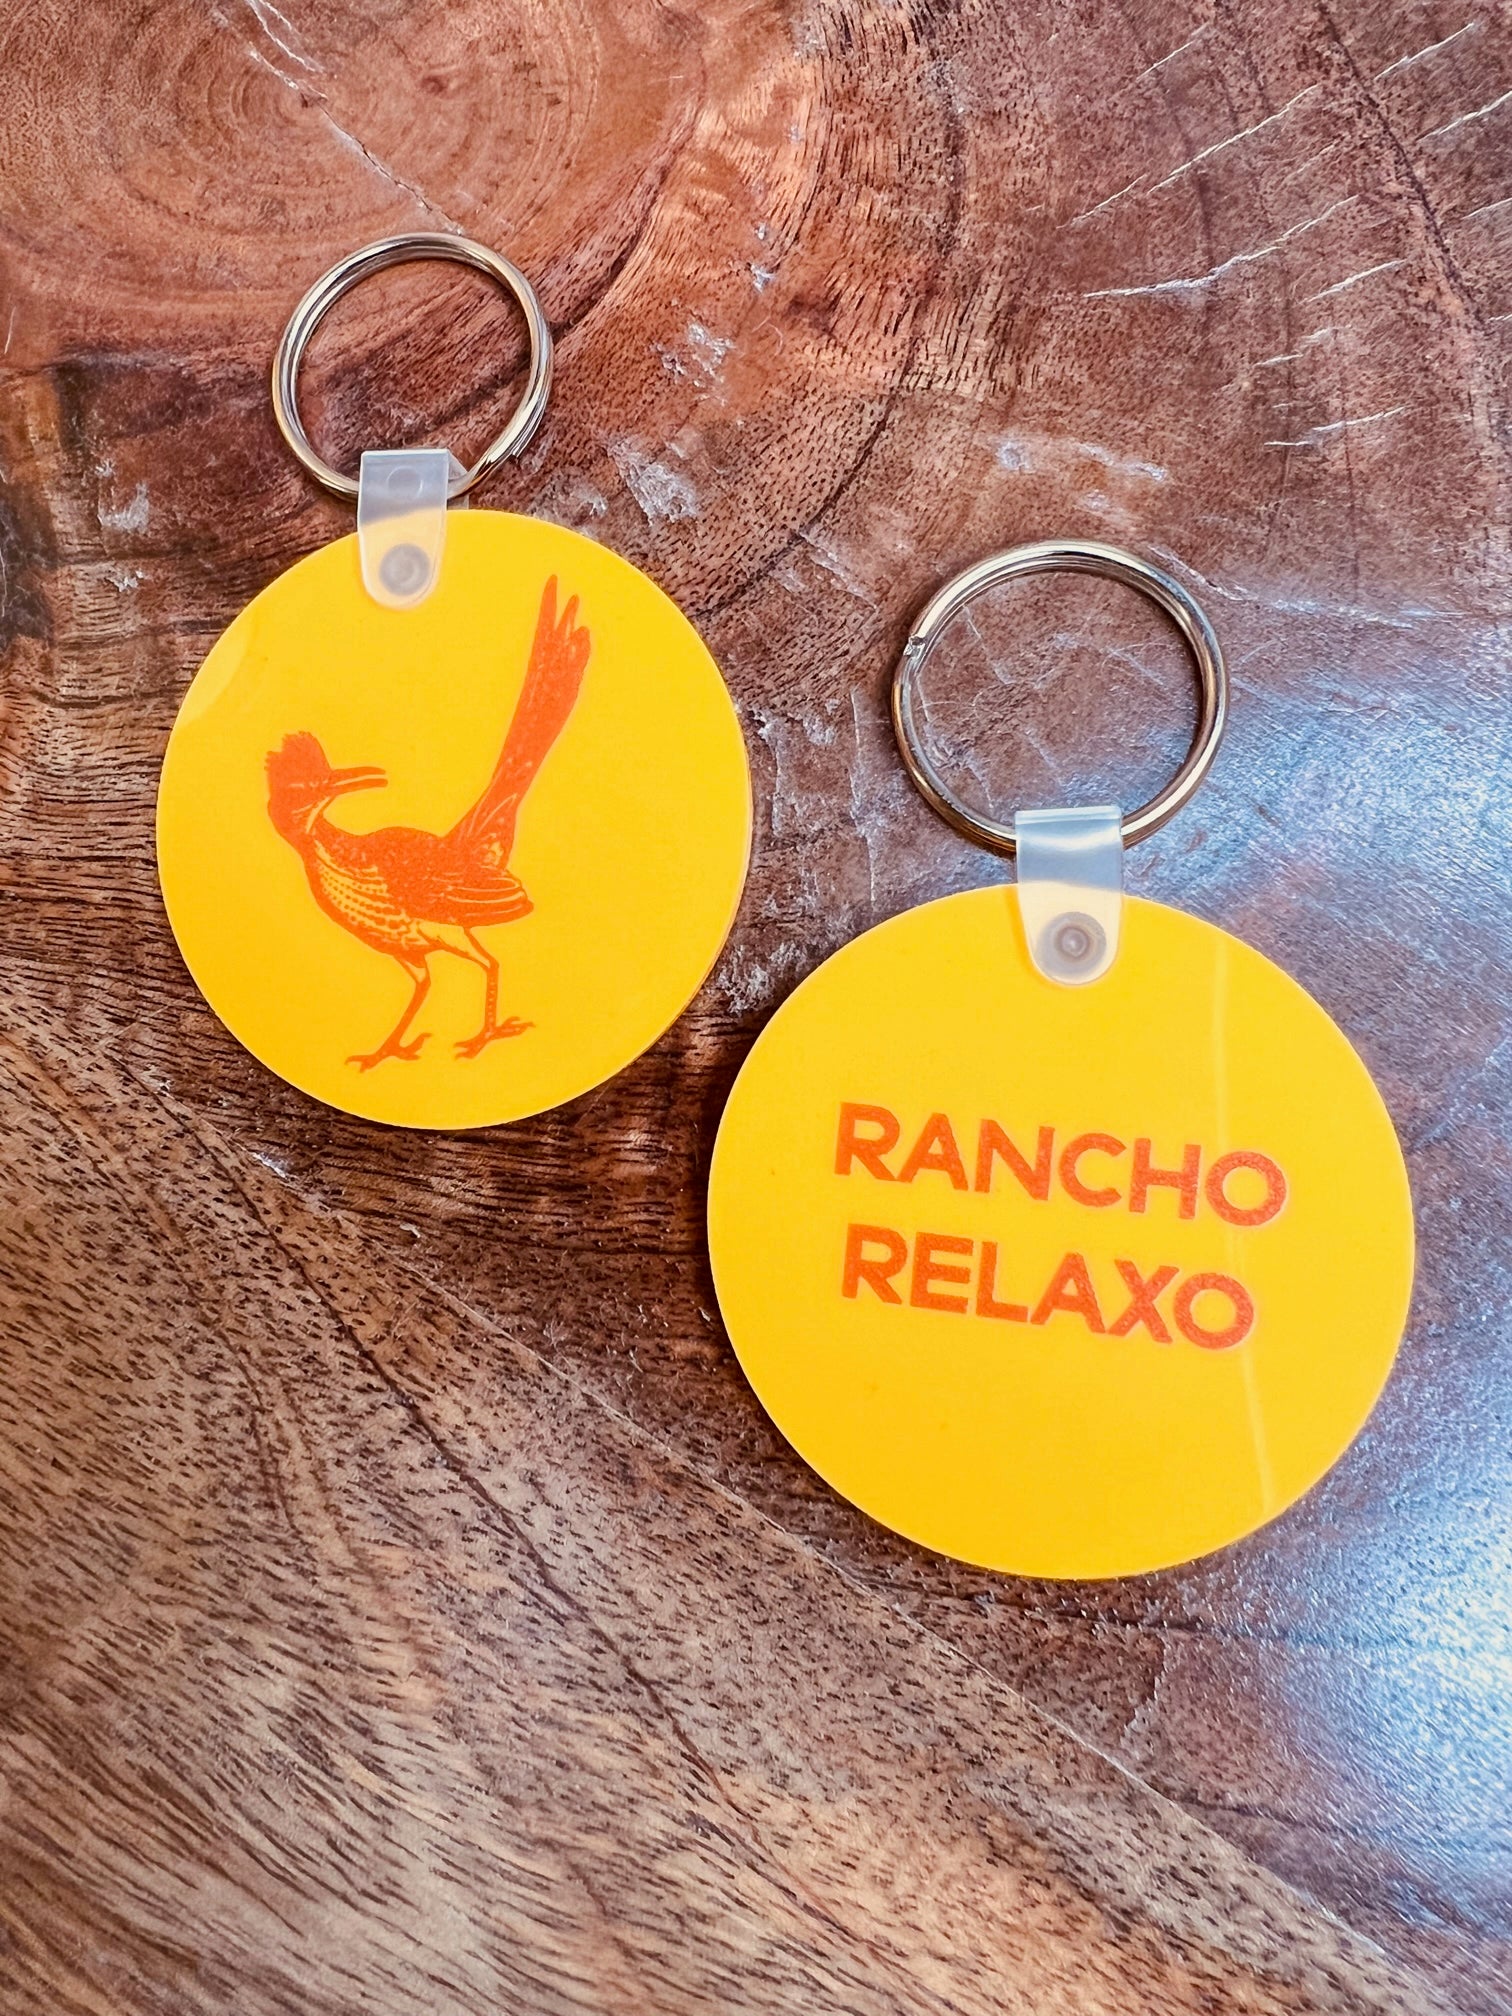 Vinyl Roadrunner Keychain - Rancho Relaxo